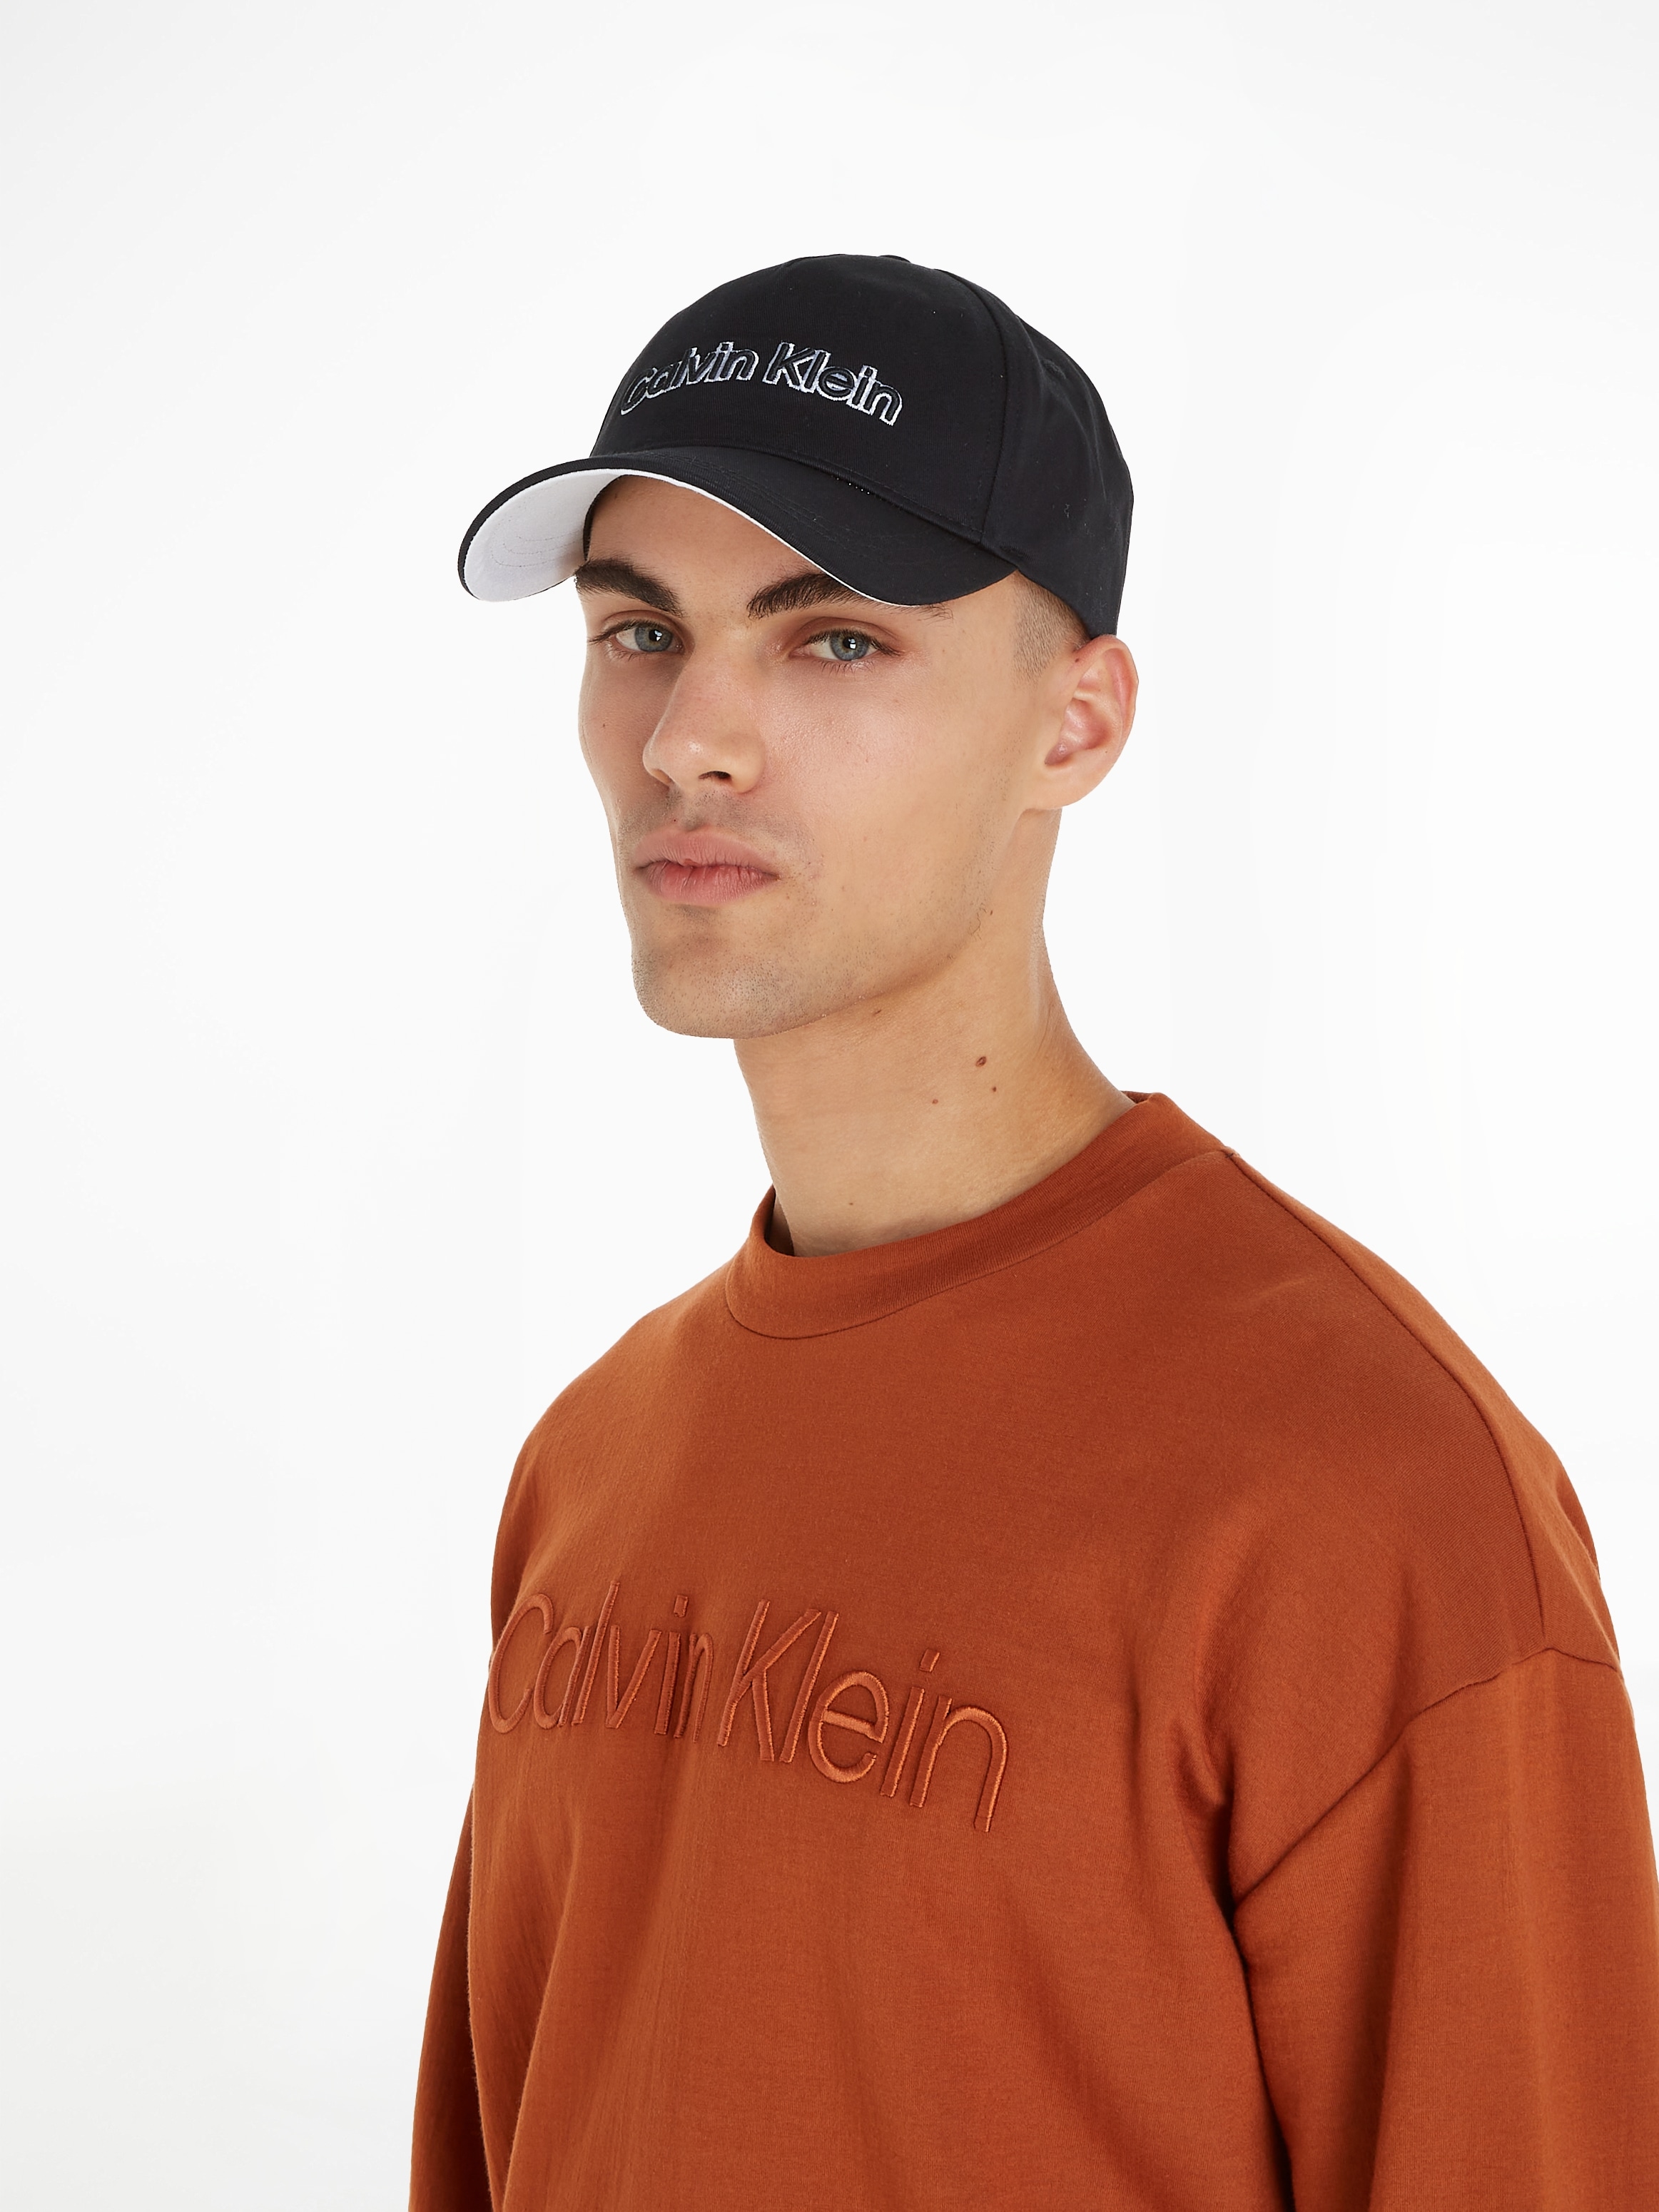 Calvin Klein Baseball Cap »EMBROIDERY BB CAP« online bestellen | UNIVERSAL